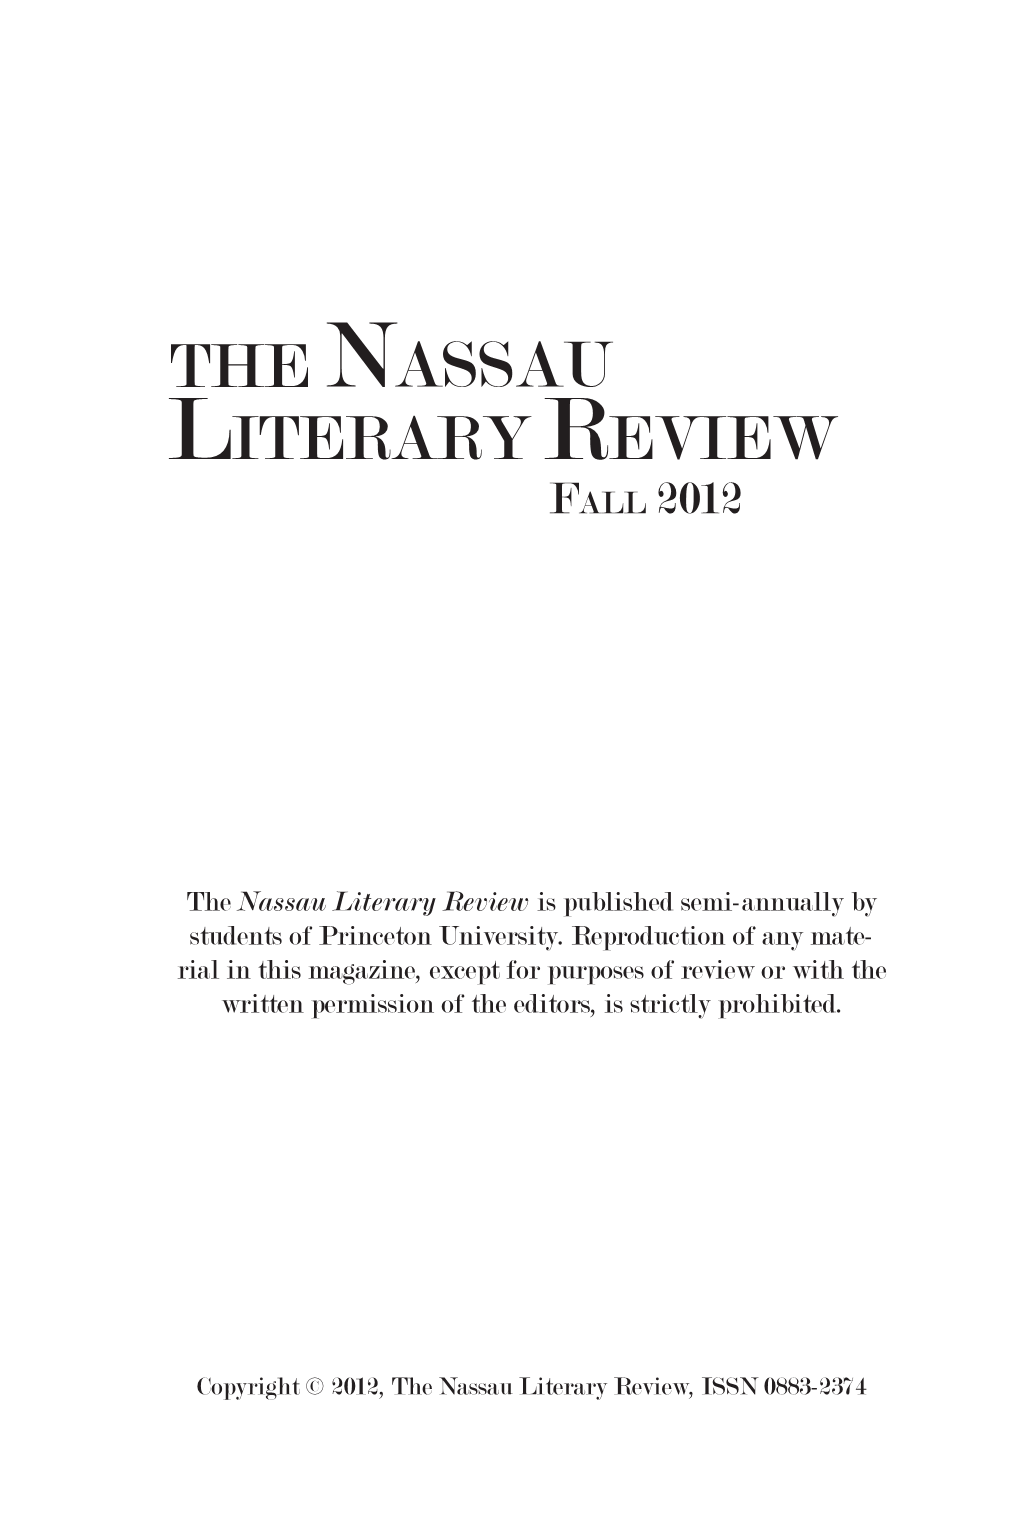 Nassau Literary Review Fall 2012